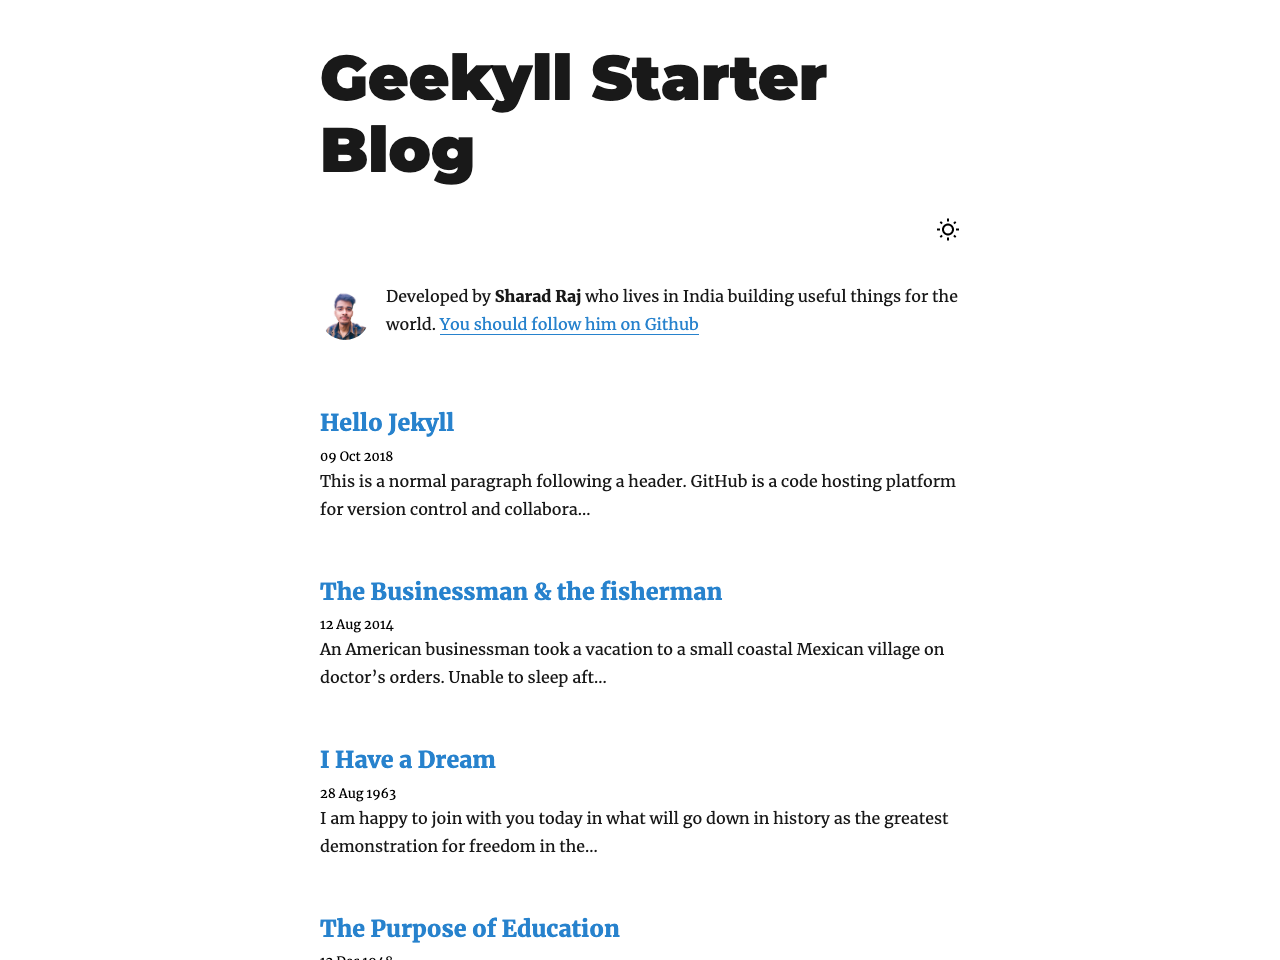 Geekyll Starter Blog screenshot